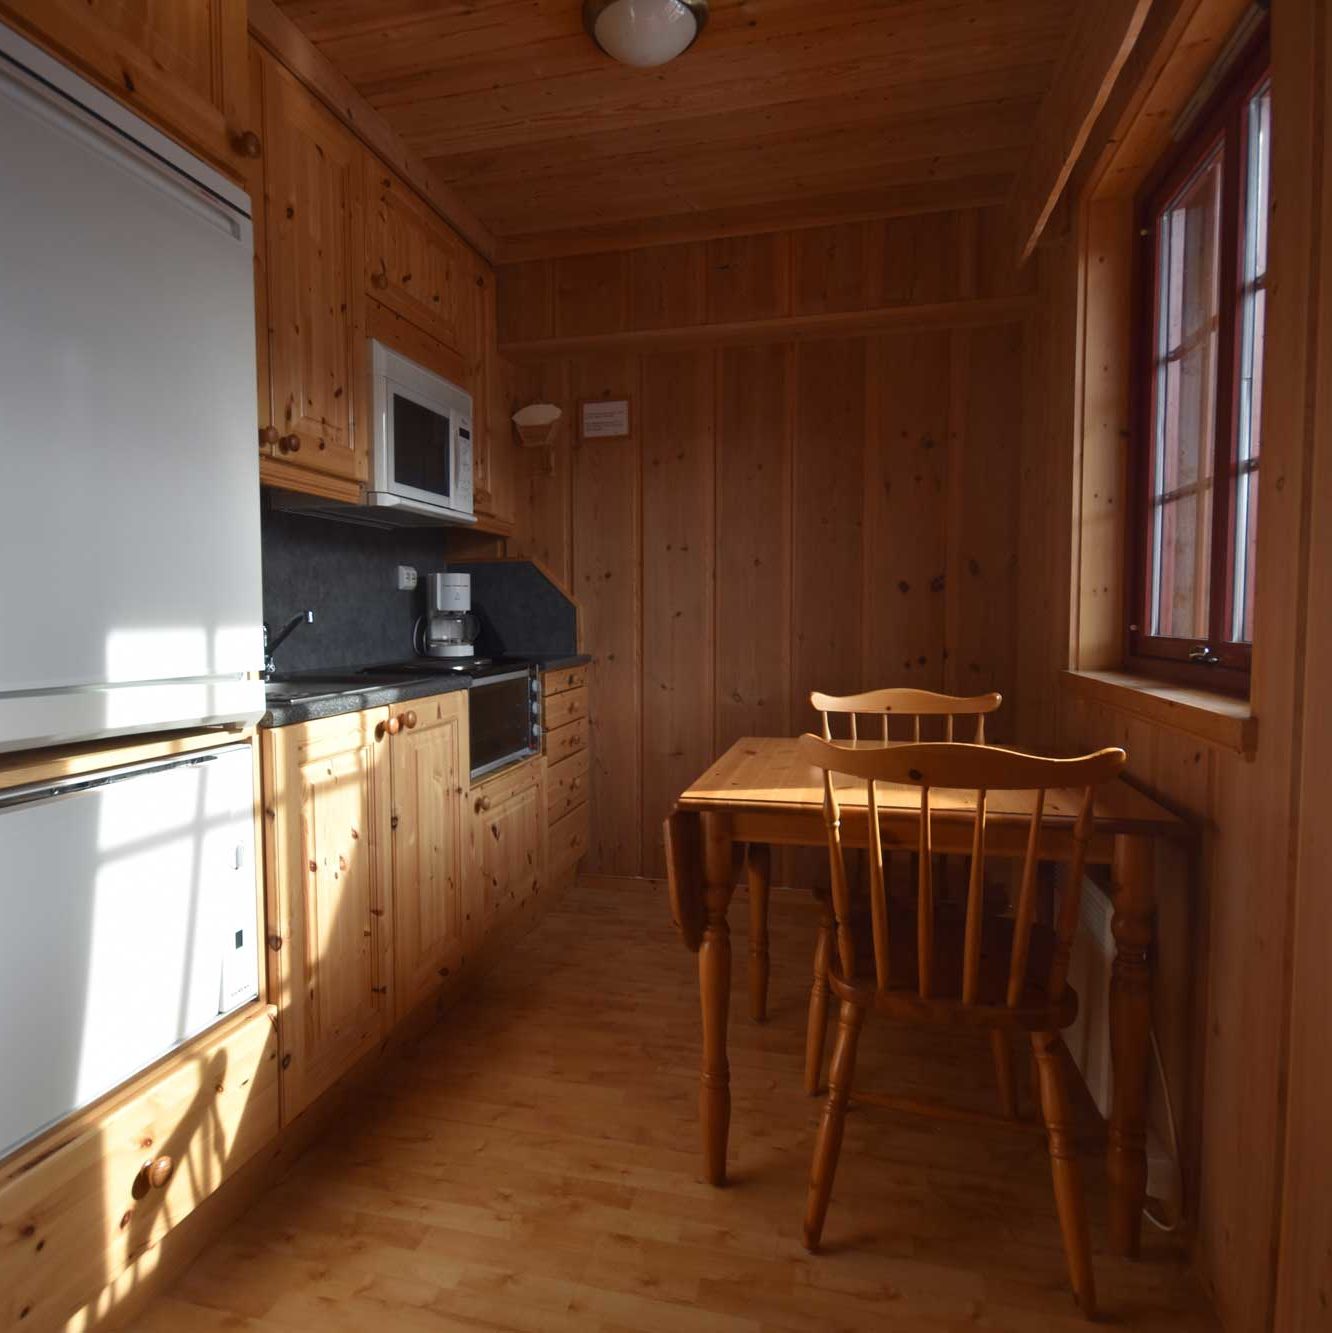 Kjøkken i leilighet på Dønfoss camping med liten spisegruppe, kjøleskap, oppvaskmaskin, micro, kaffetrakter og stekeoven.